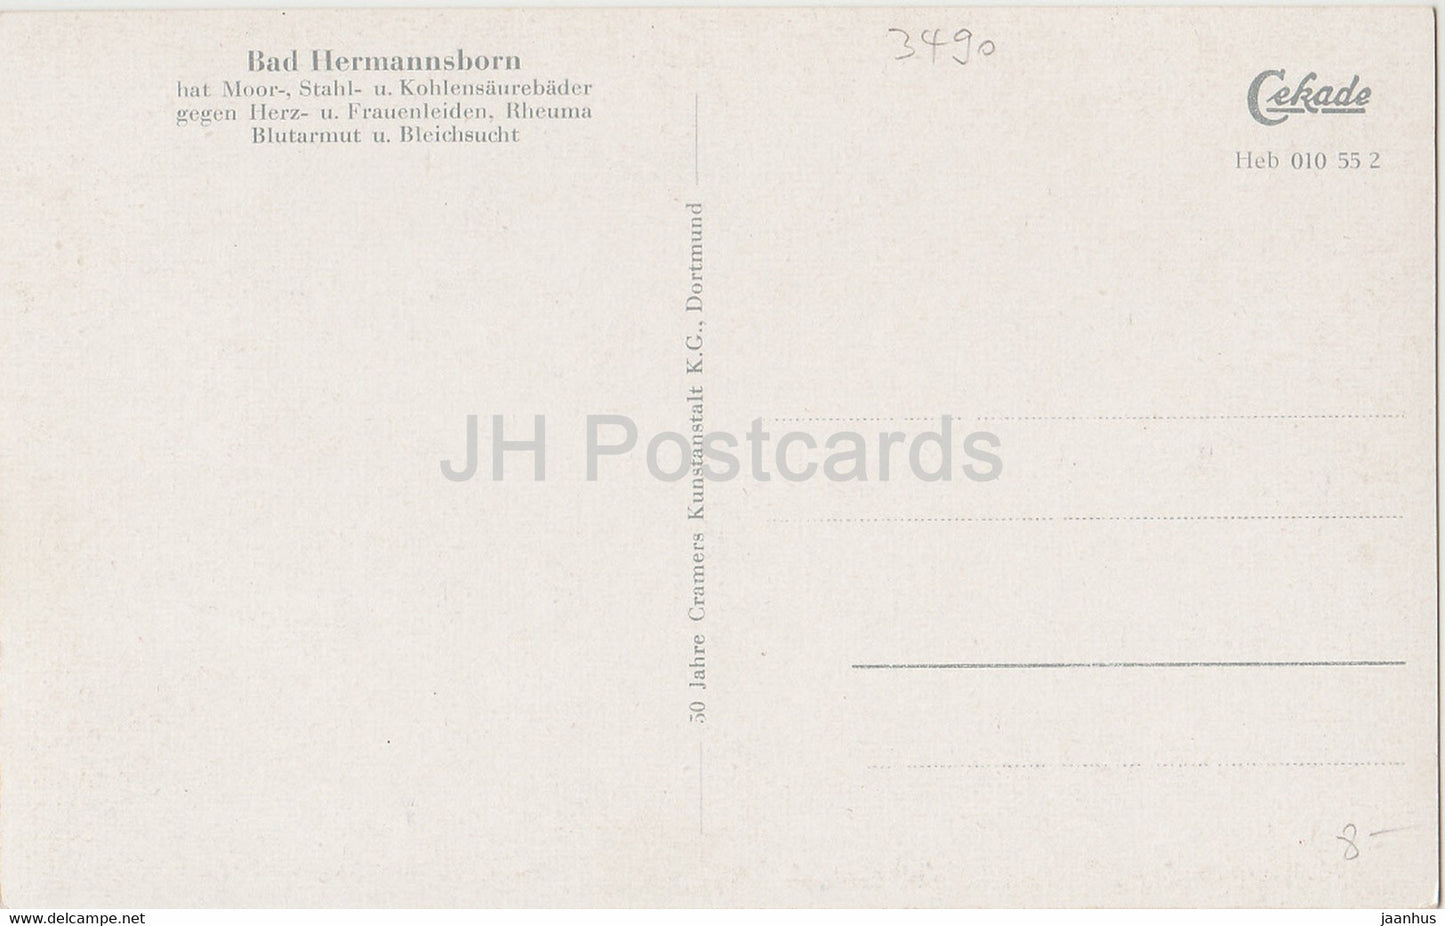 Bad Hermannsborn - Partie am Schwanenteich - old postcard - 1957 - Germany - unused